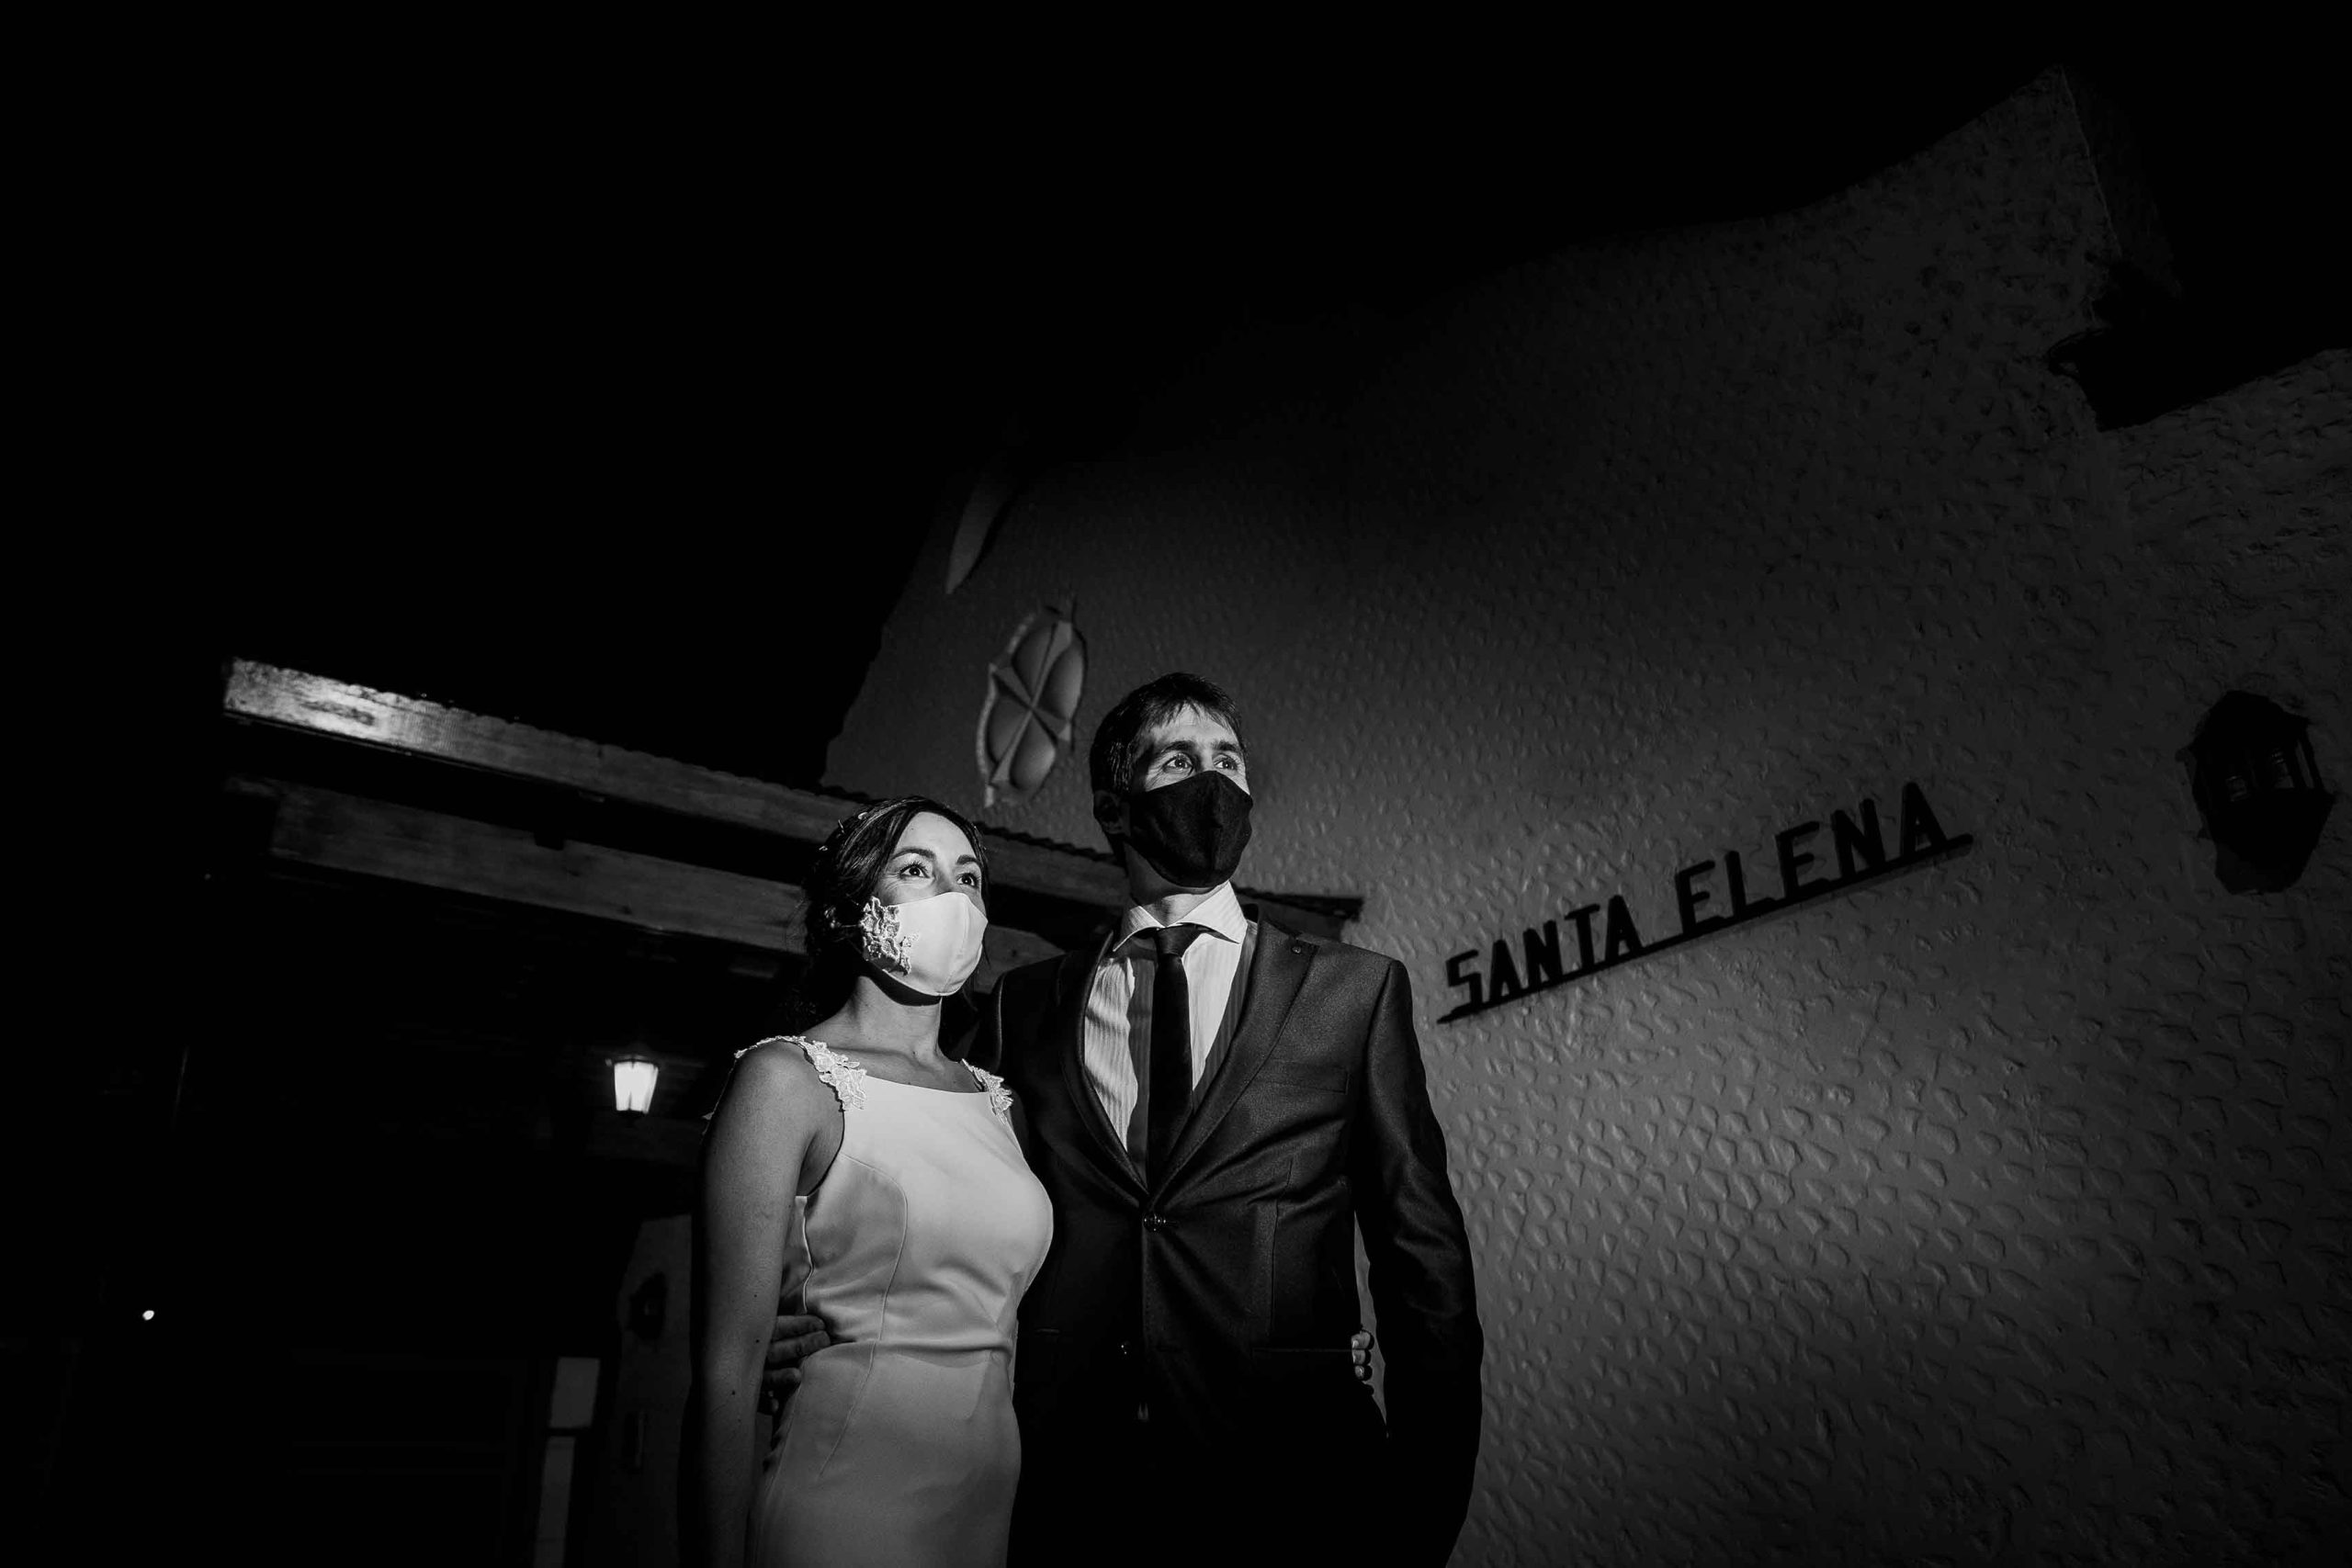 Fotos de la boda de Tania y Alejandro en Venado Tuerto  realizadas por Bucle Fotografias Flor Bosio y Caro Clerici